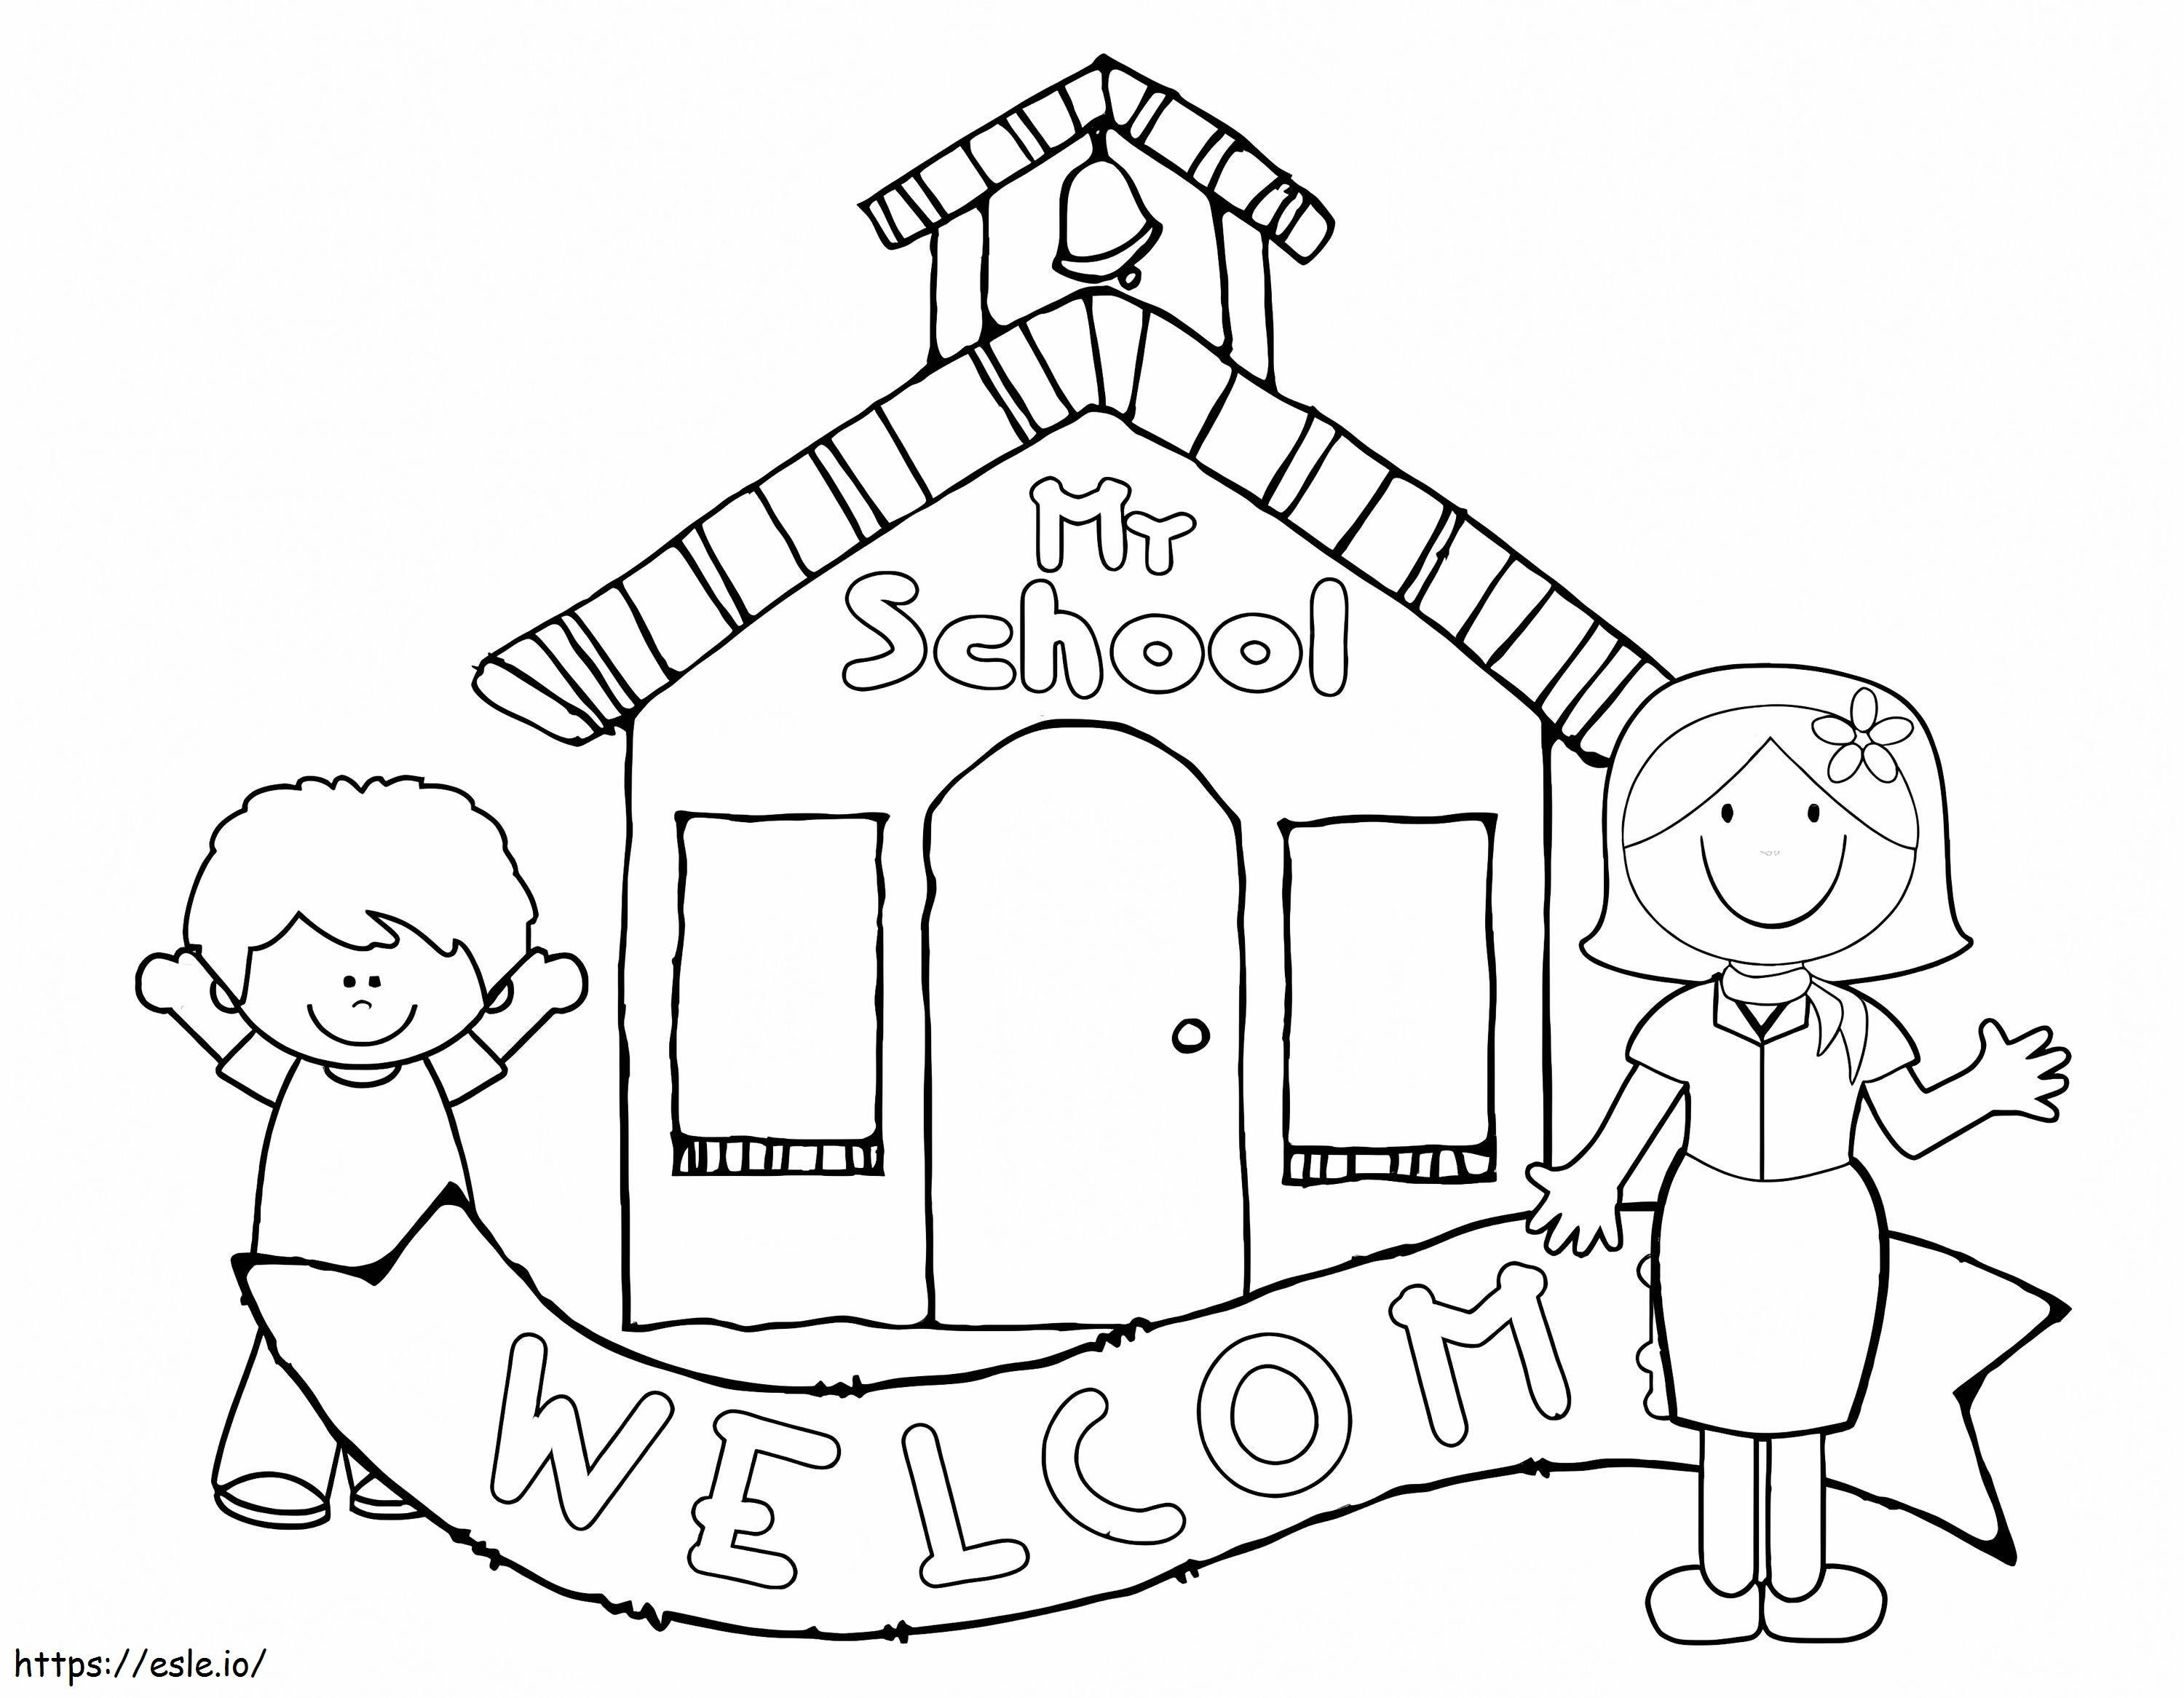 Bienvenido al jardín de infancia 2 para colorear